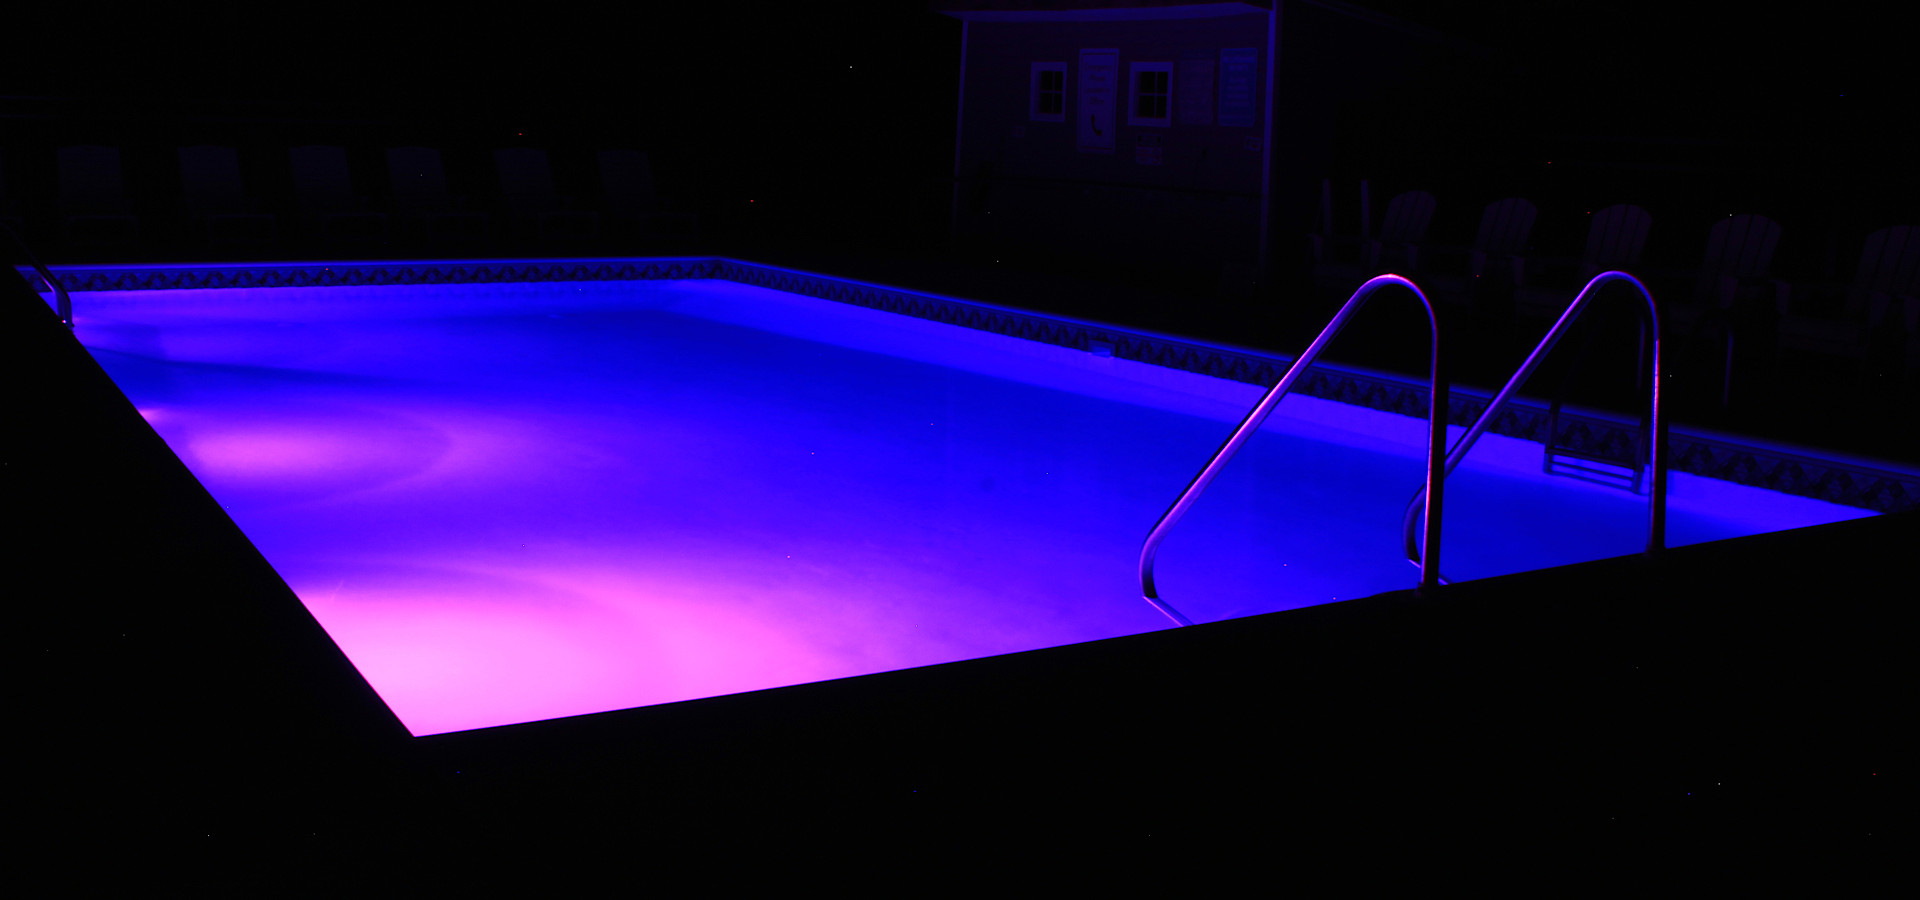 Nighttime pool 